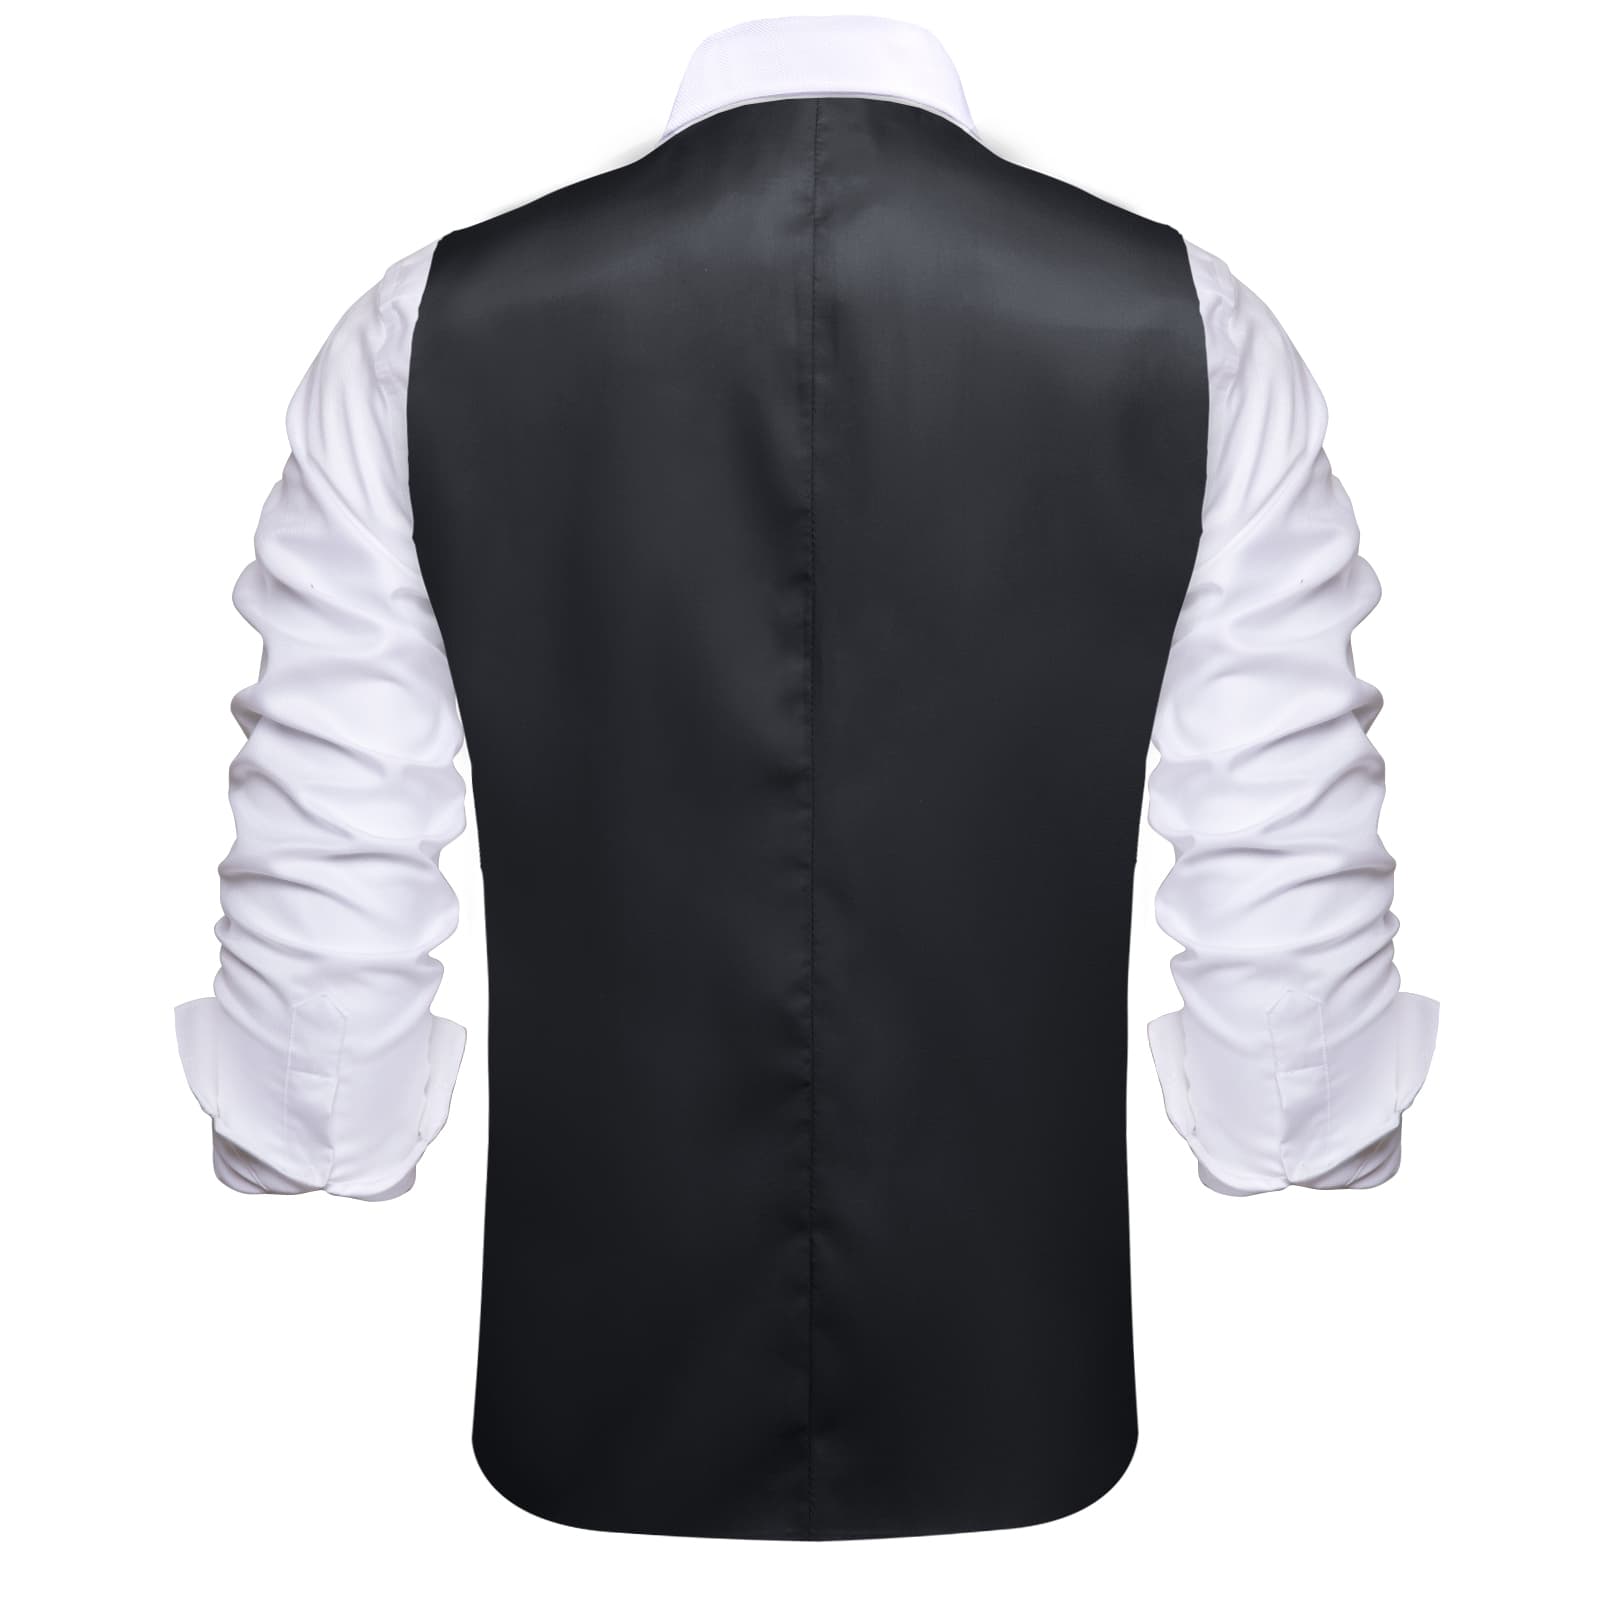 Hi-Tie Suit Vest Layered Waistcoat Black Gray Vests for Wedding